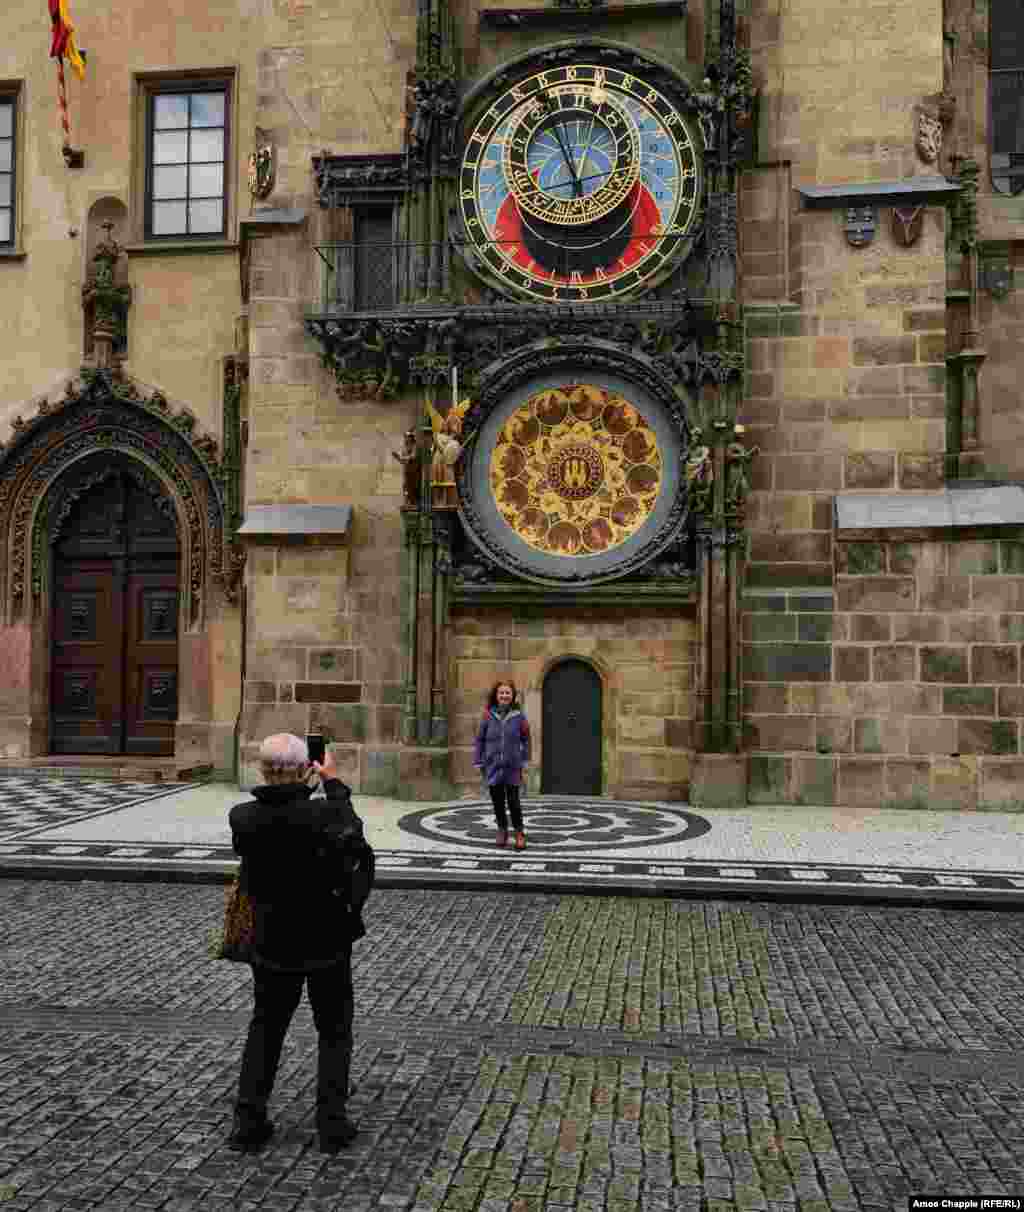 Чеське подружжя фотографується перед знаменитим астрономічним годинником у Празі